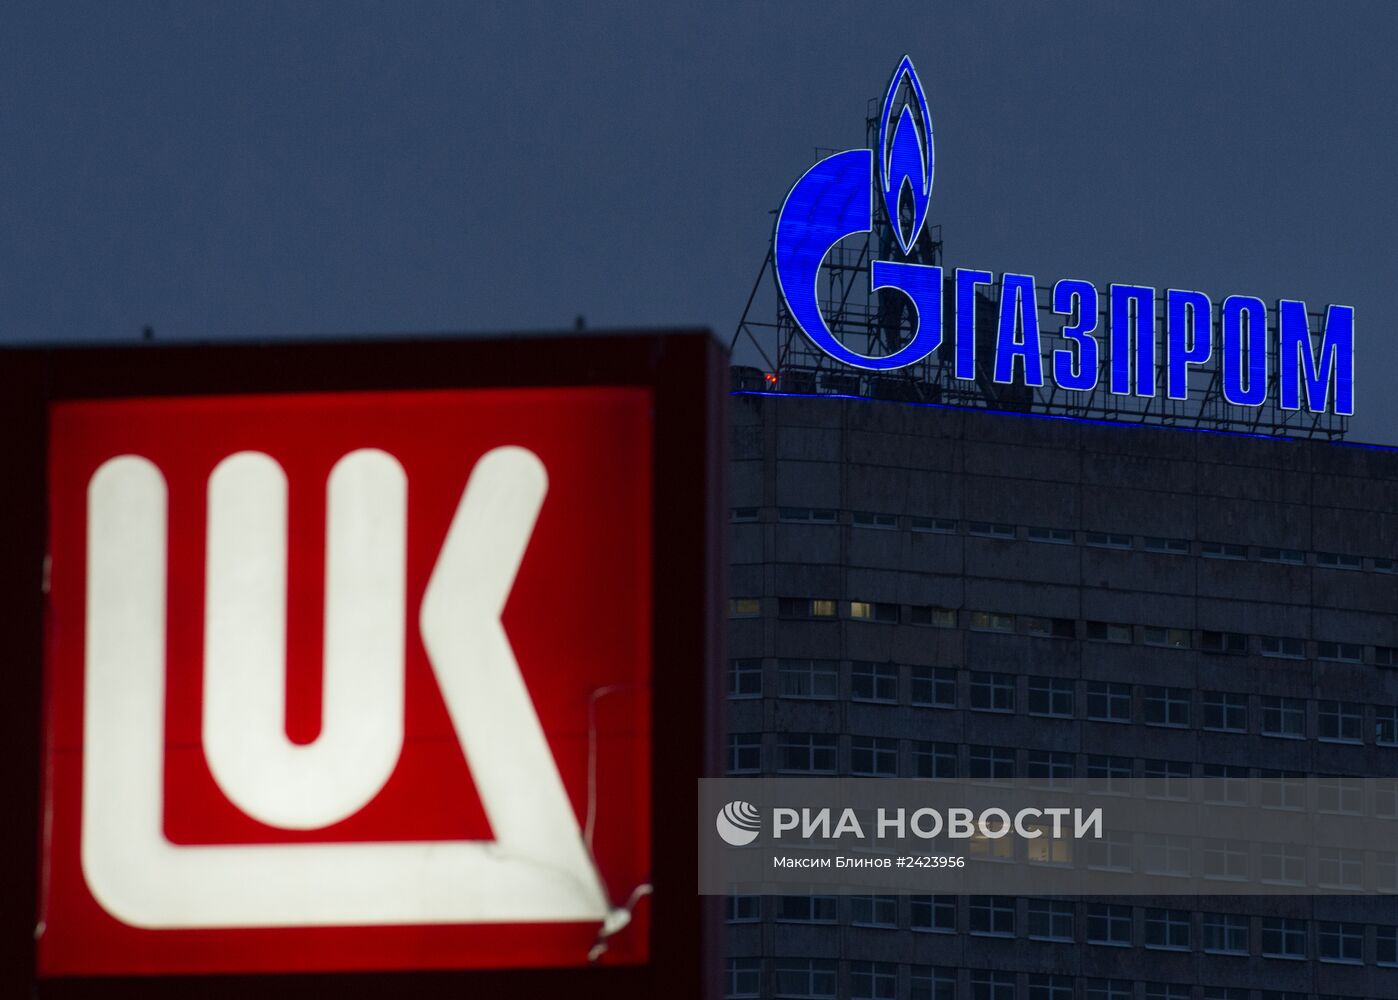 Логотип компании "Газпром" на административном здании в Москве